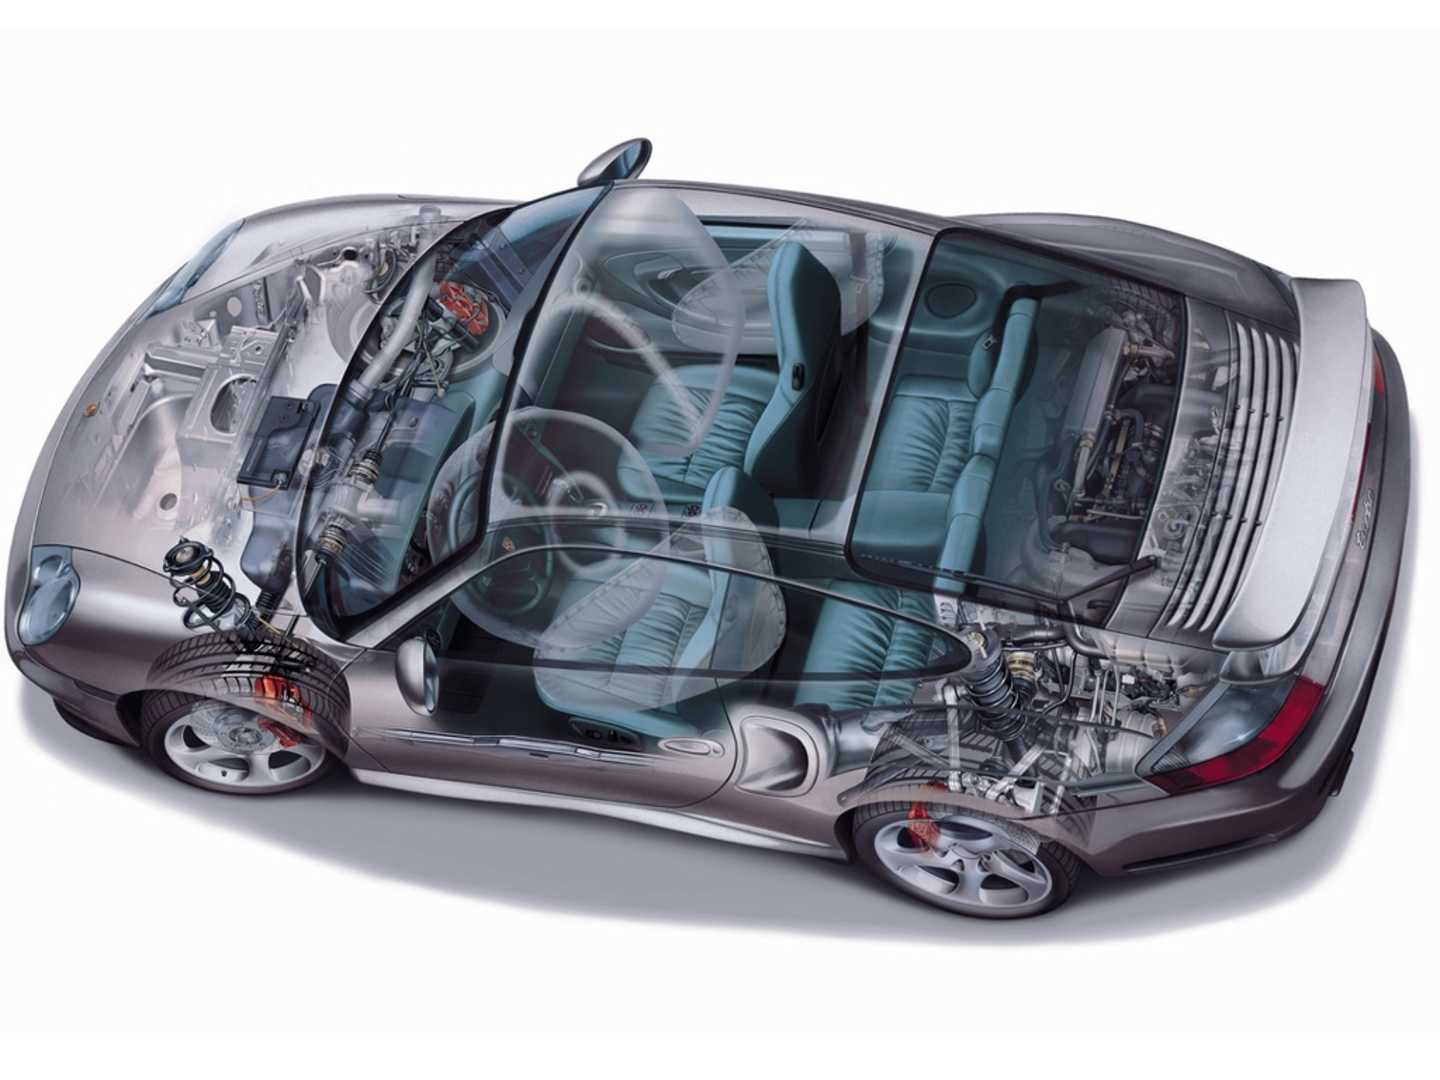 Schéma mécanique de la 911 Turbo